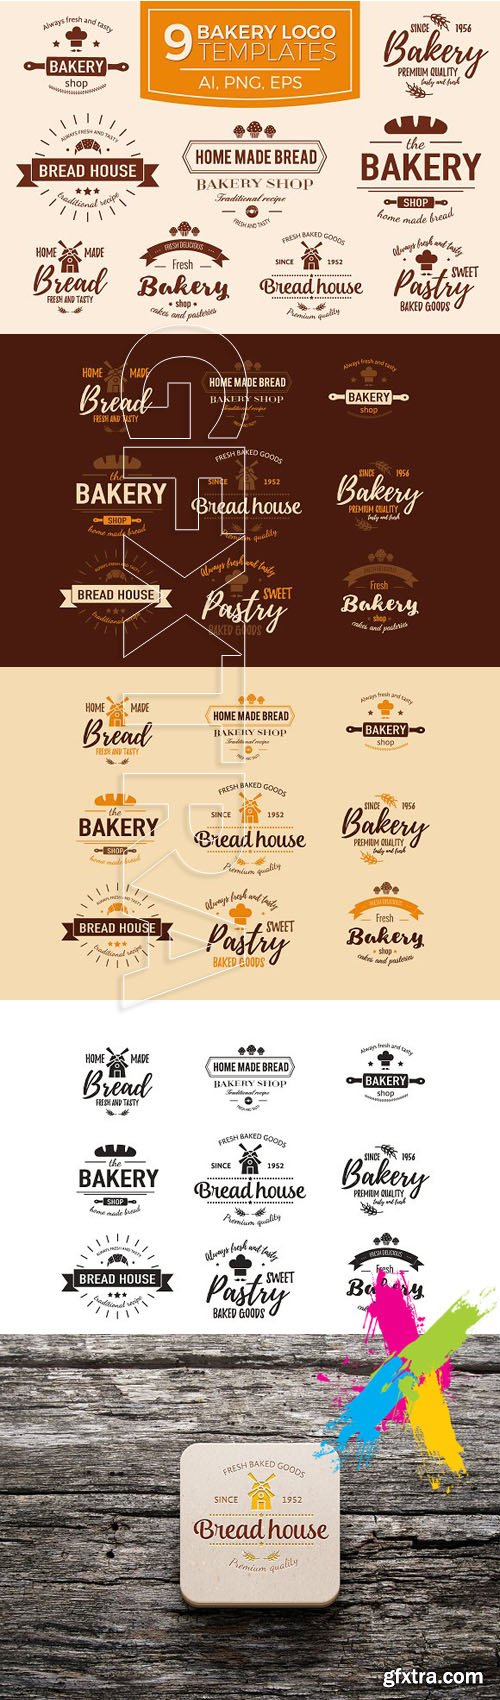 CM Bakery logo set 1112608